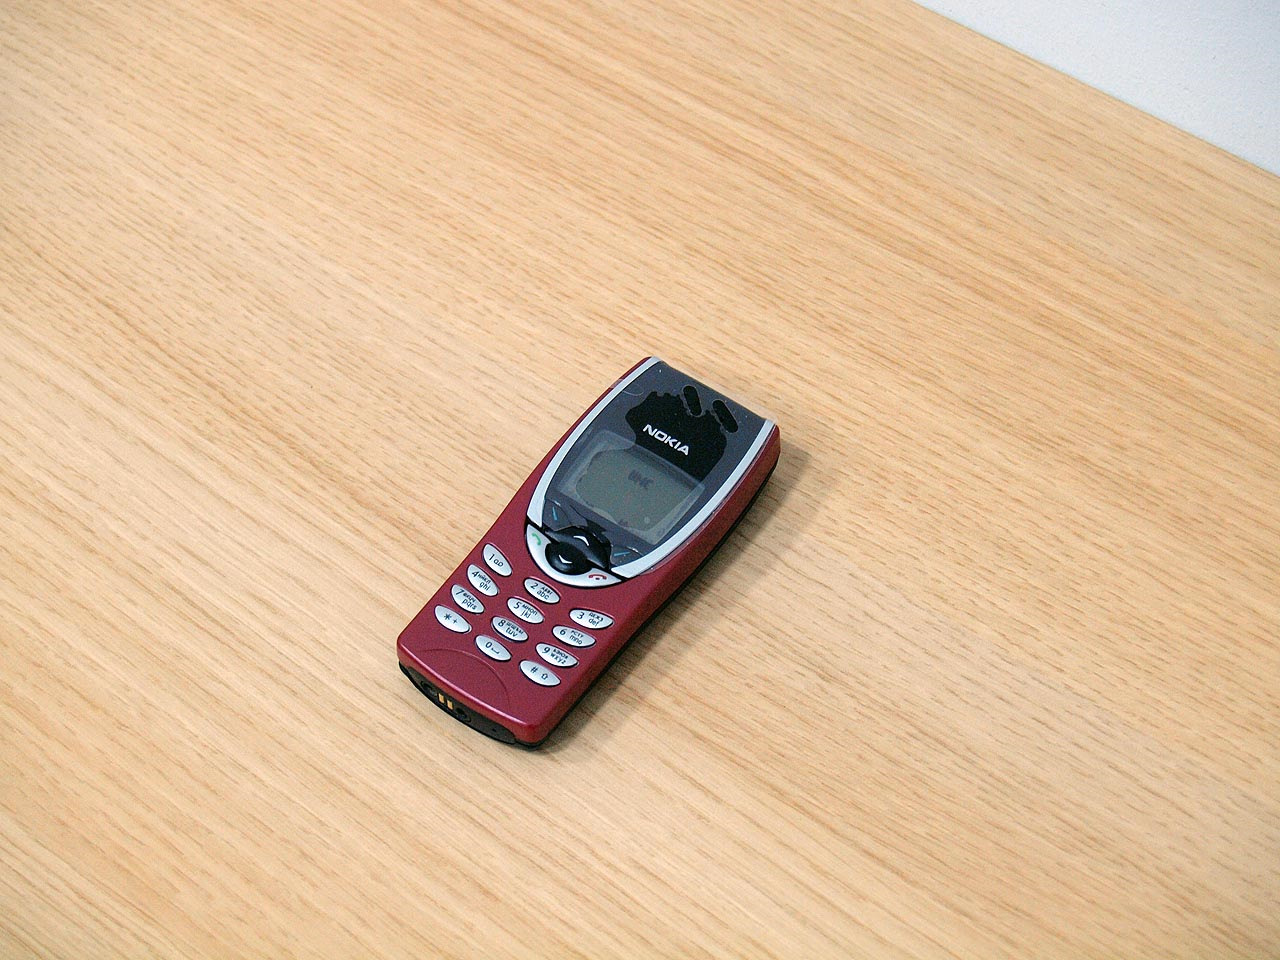 Nokia 8210. 